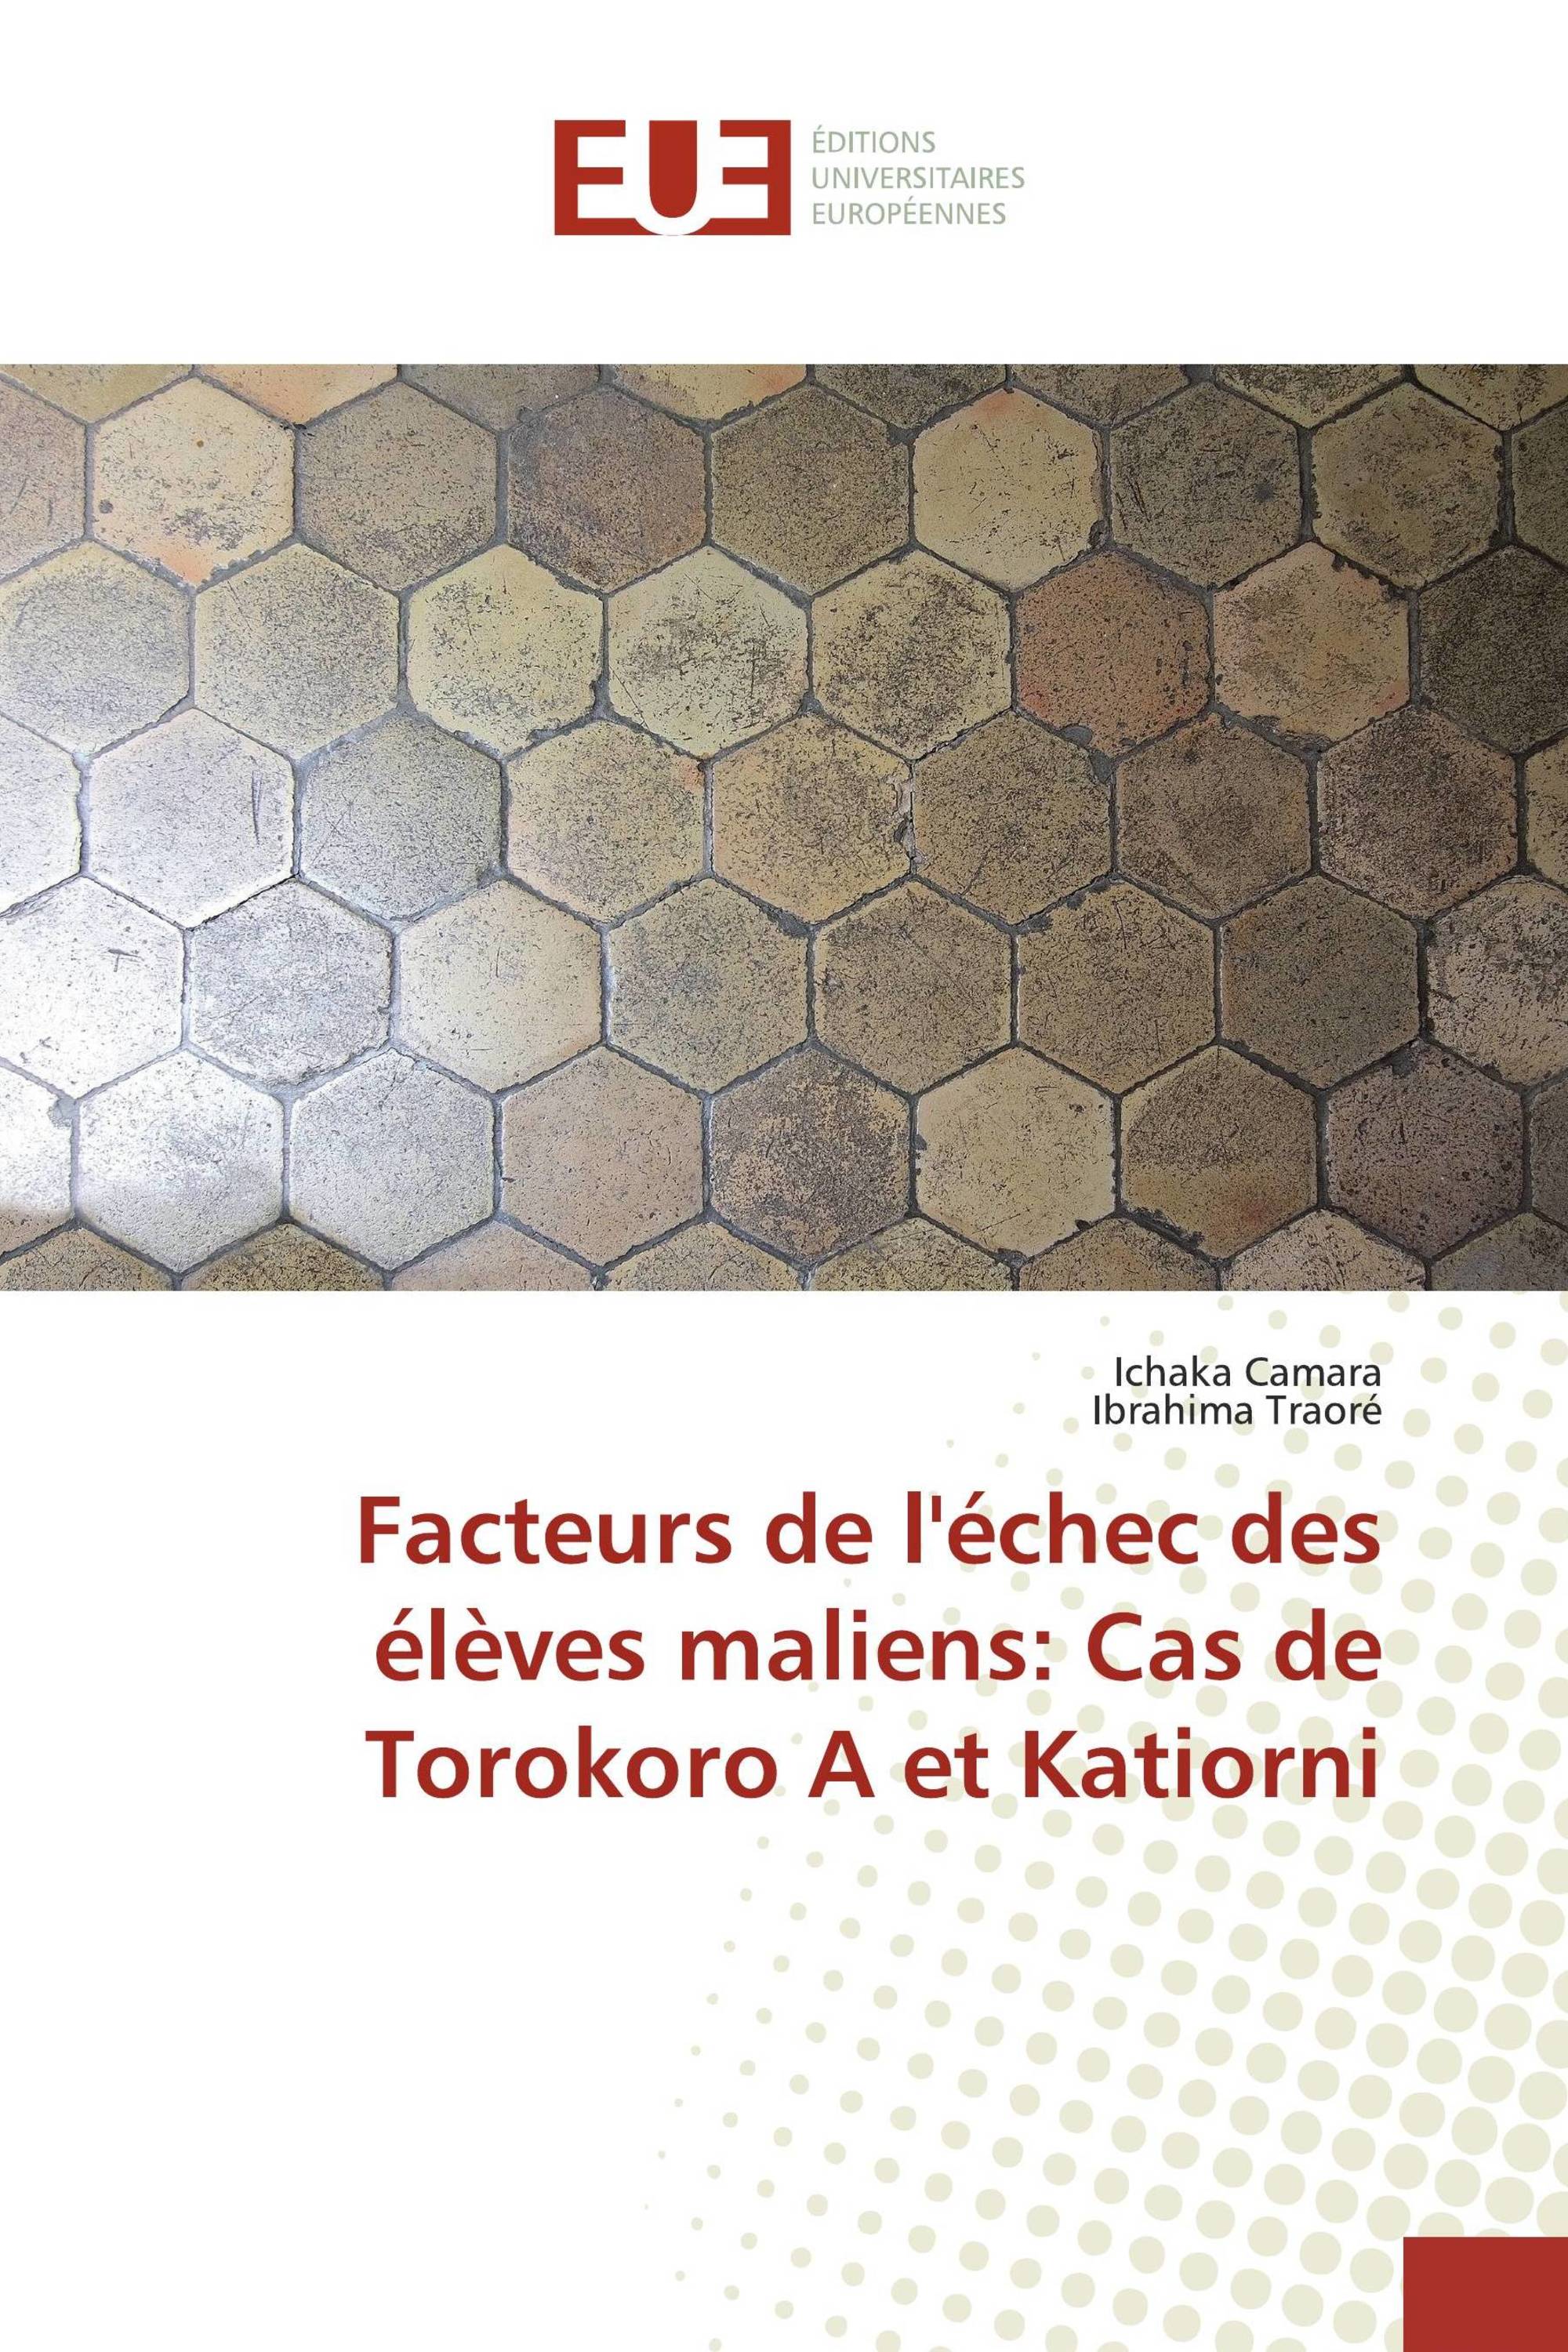 Facteurs de l'échec des élèves maliens: Cas de Torokoro A et Katiorni